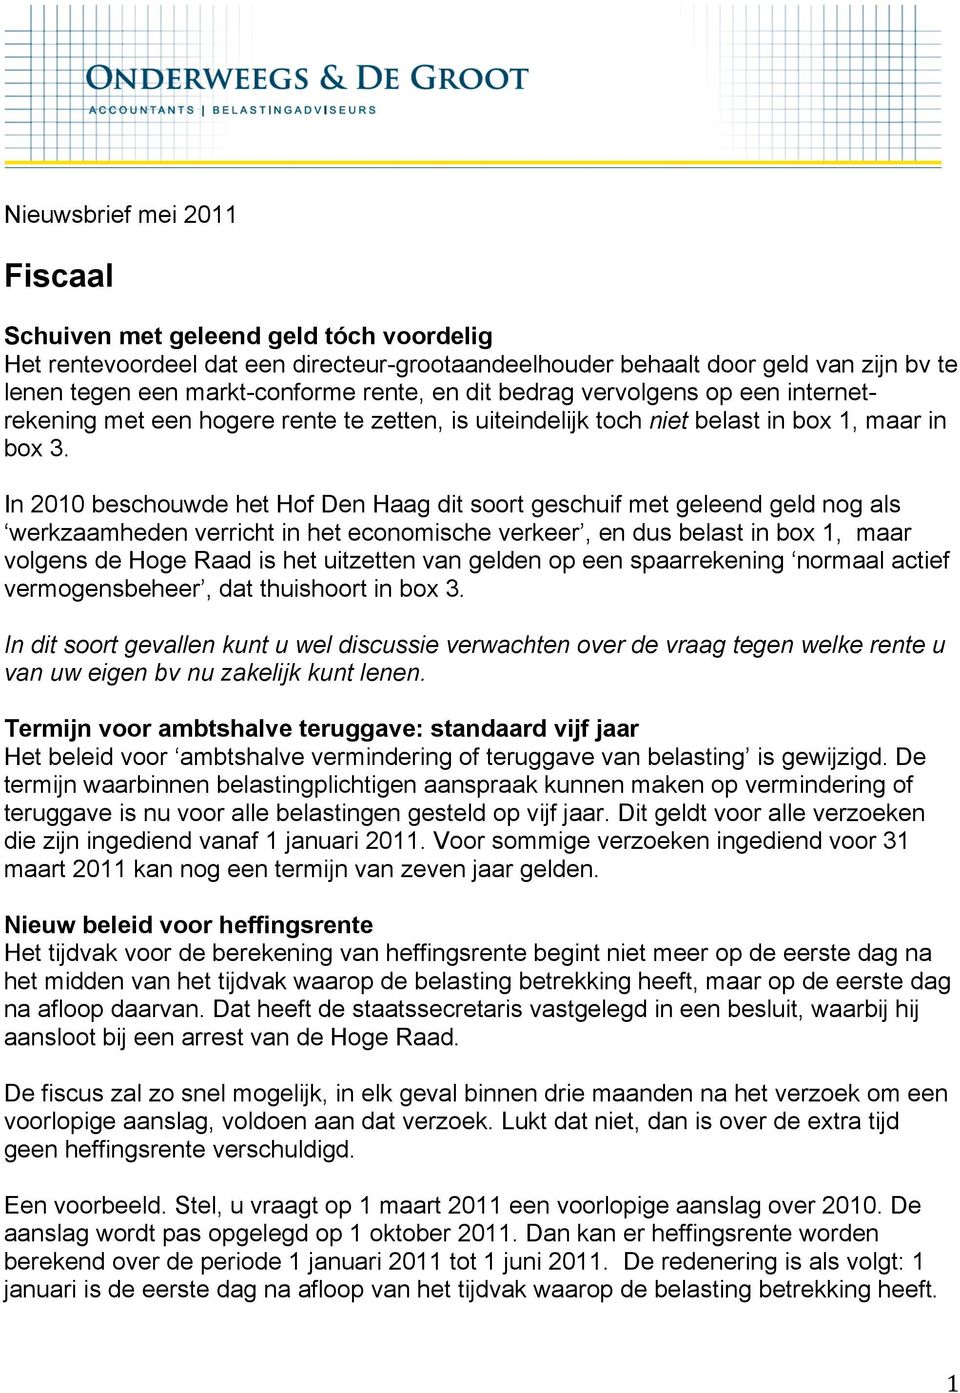 In 2010 beschouwde het Hof Den Haag dit soort geschuif met geleend geld nog als werkzaamheden verricht in het economische verkeer, en dus belast in box 1, maar volgens de Hoge Raad is het uitzetten